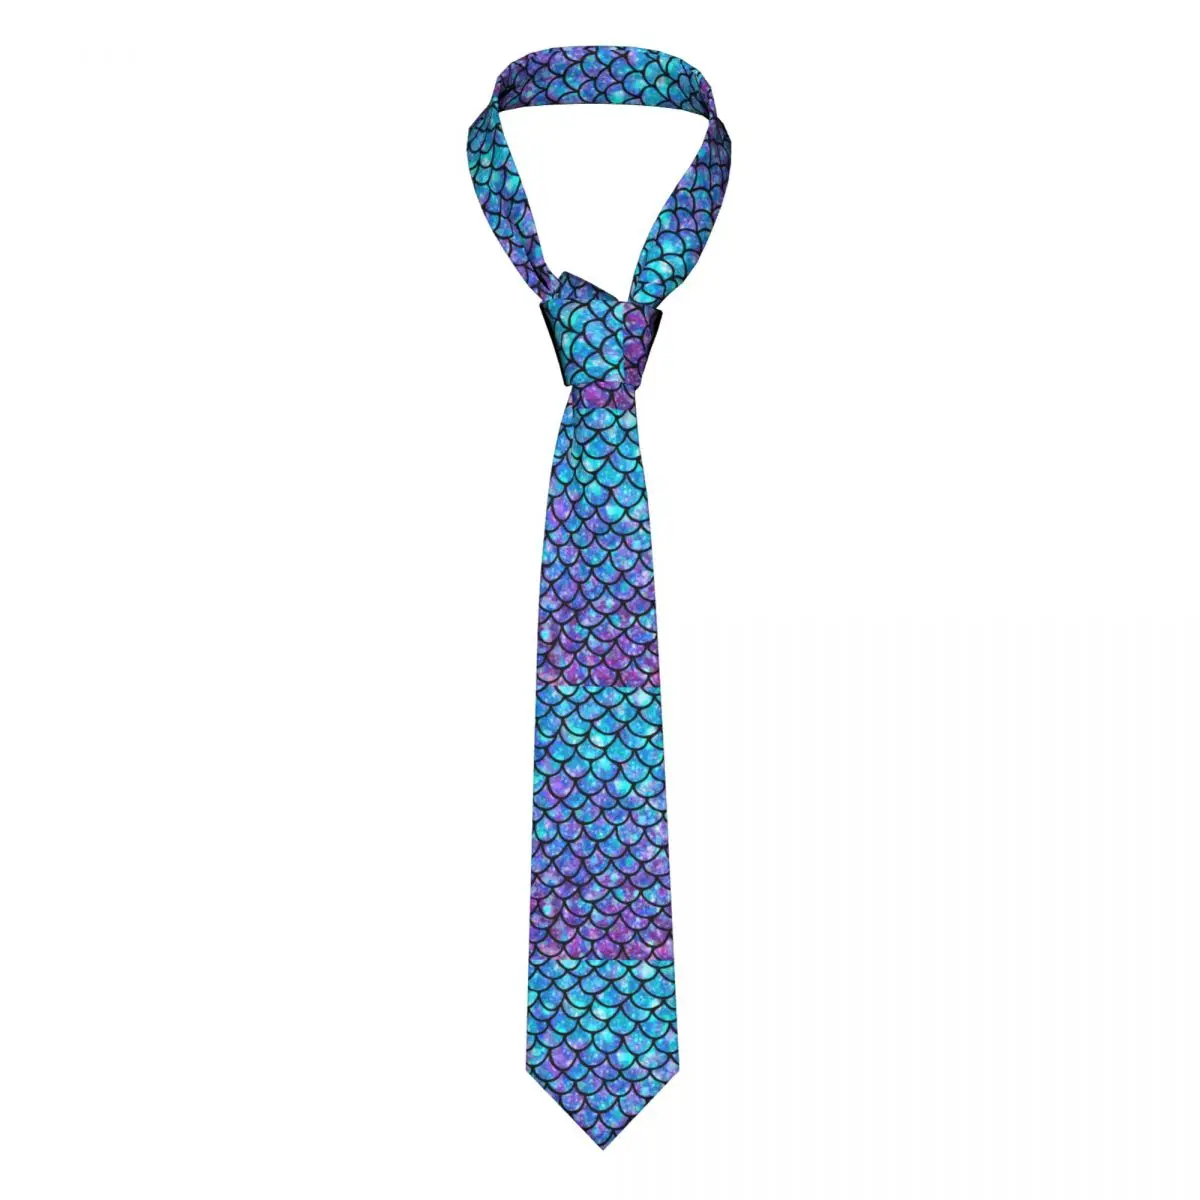 

Русалка весы Галстук Фиолетовый синий всплеск абстрактные Свадебные 8 см шеи галстуки для мужчин аксессуары рубашка шаблон галстук